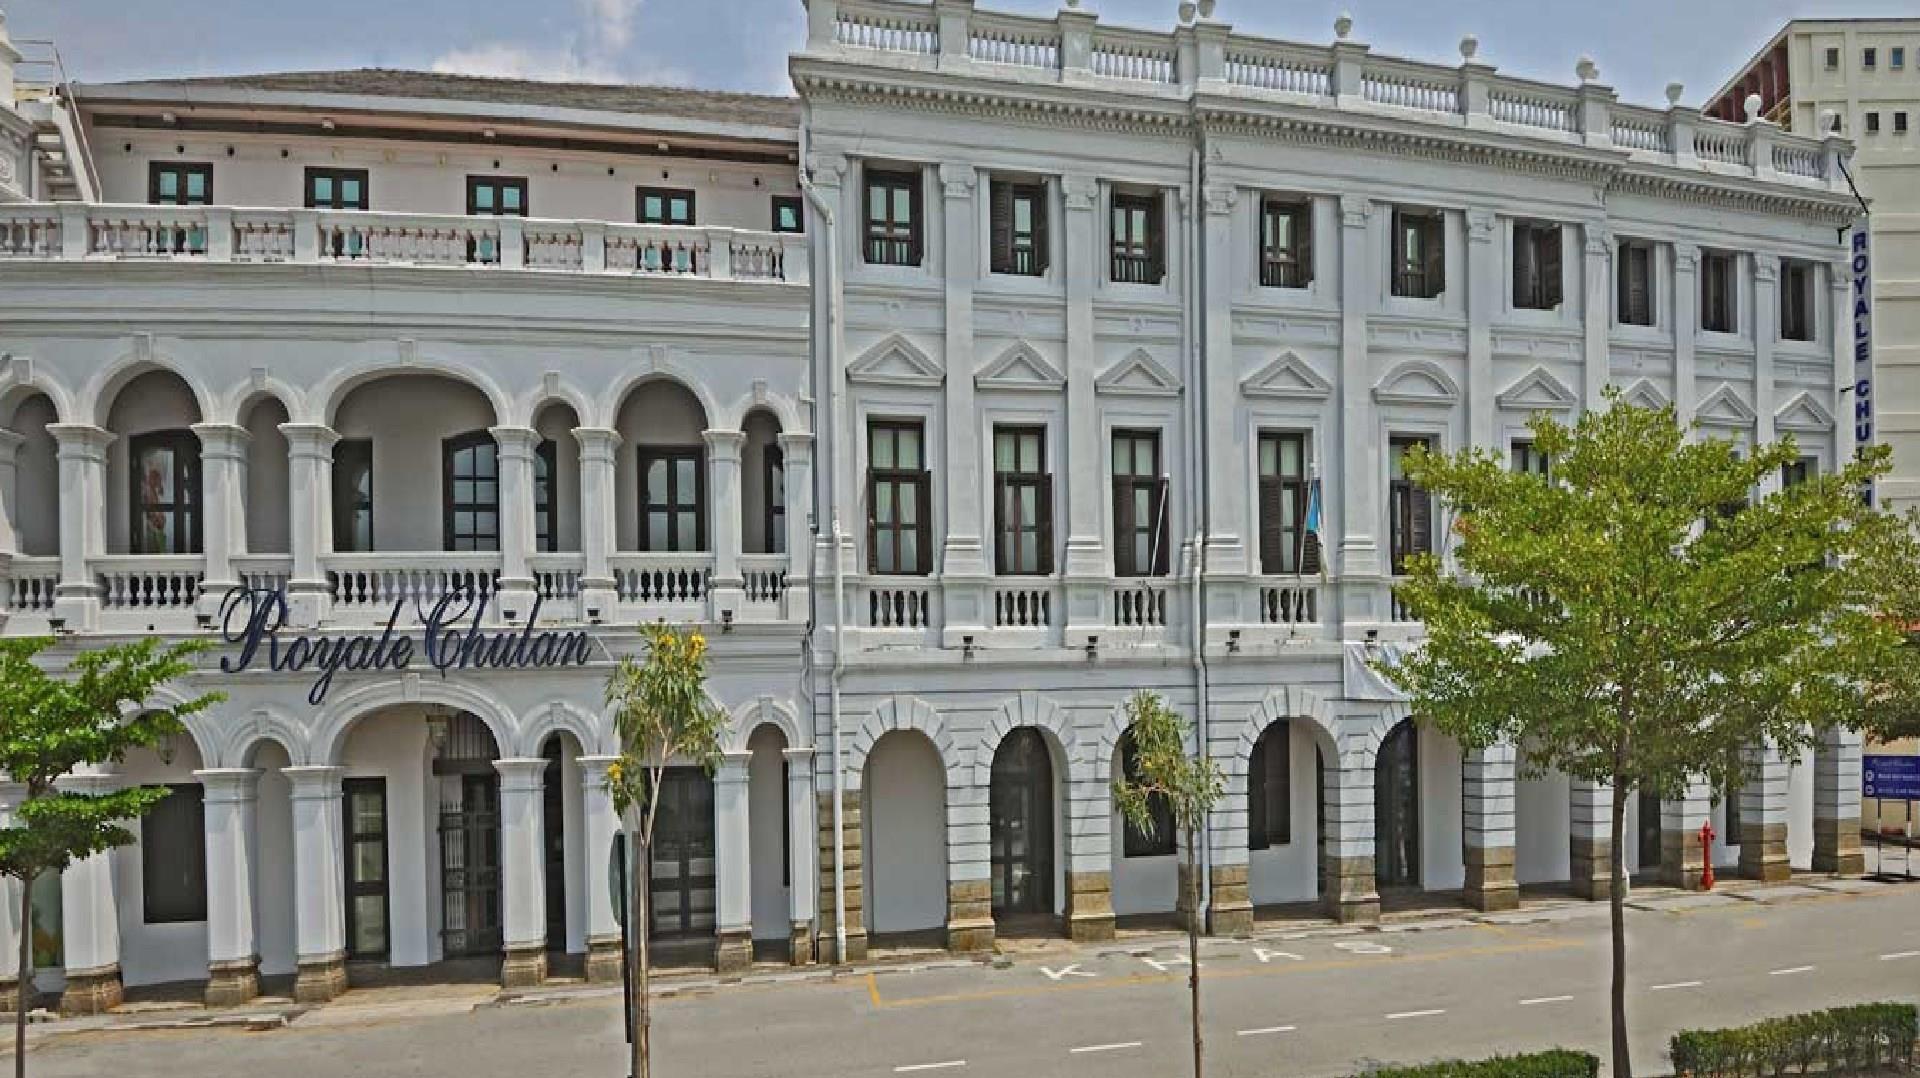 Royale Chulan Penang in Penang, MY